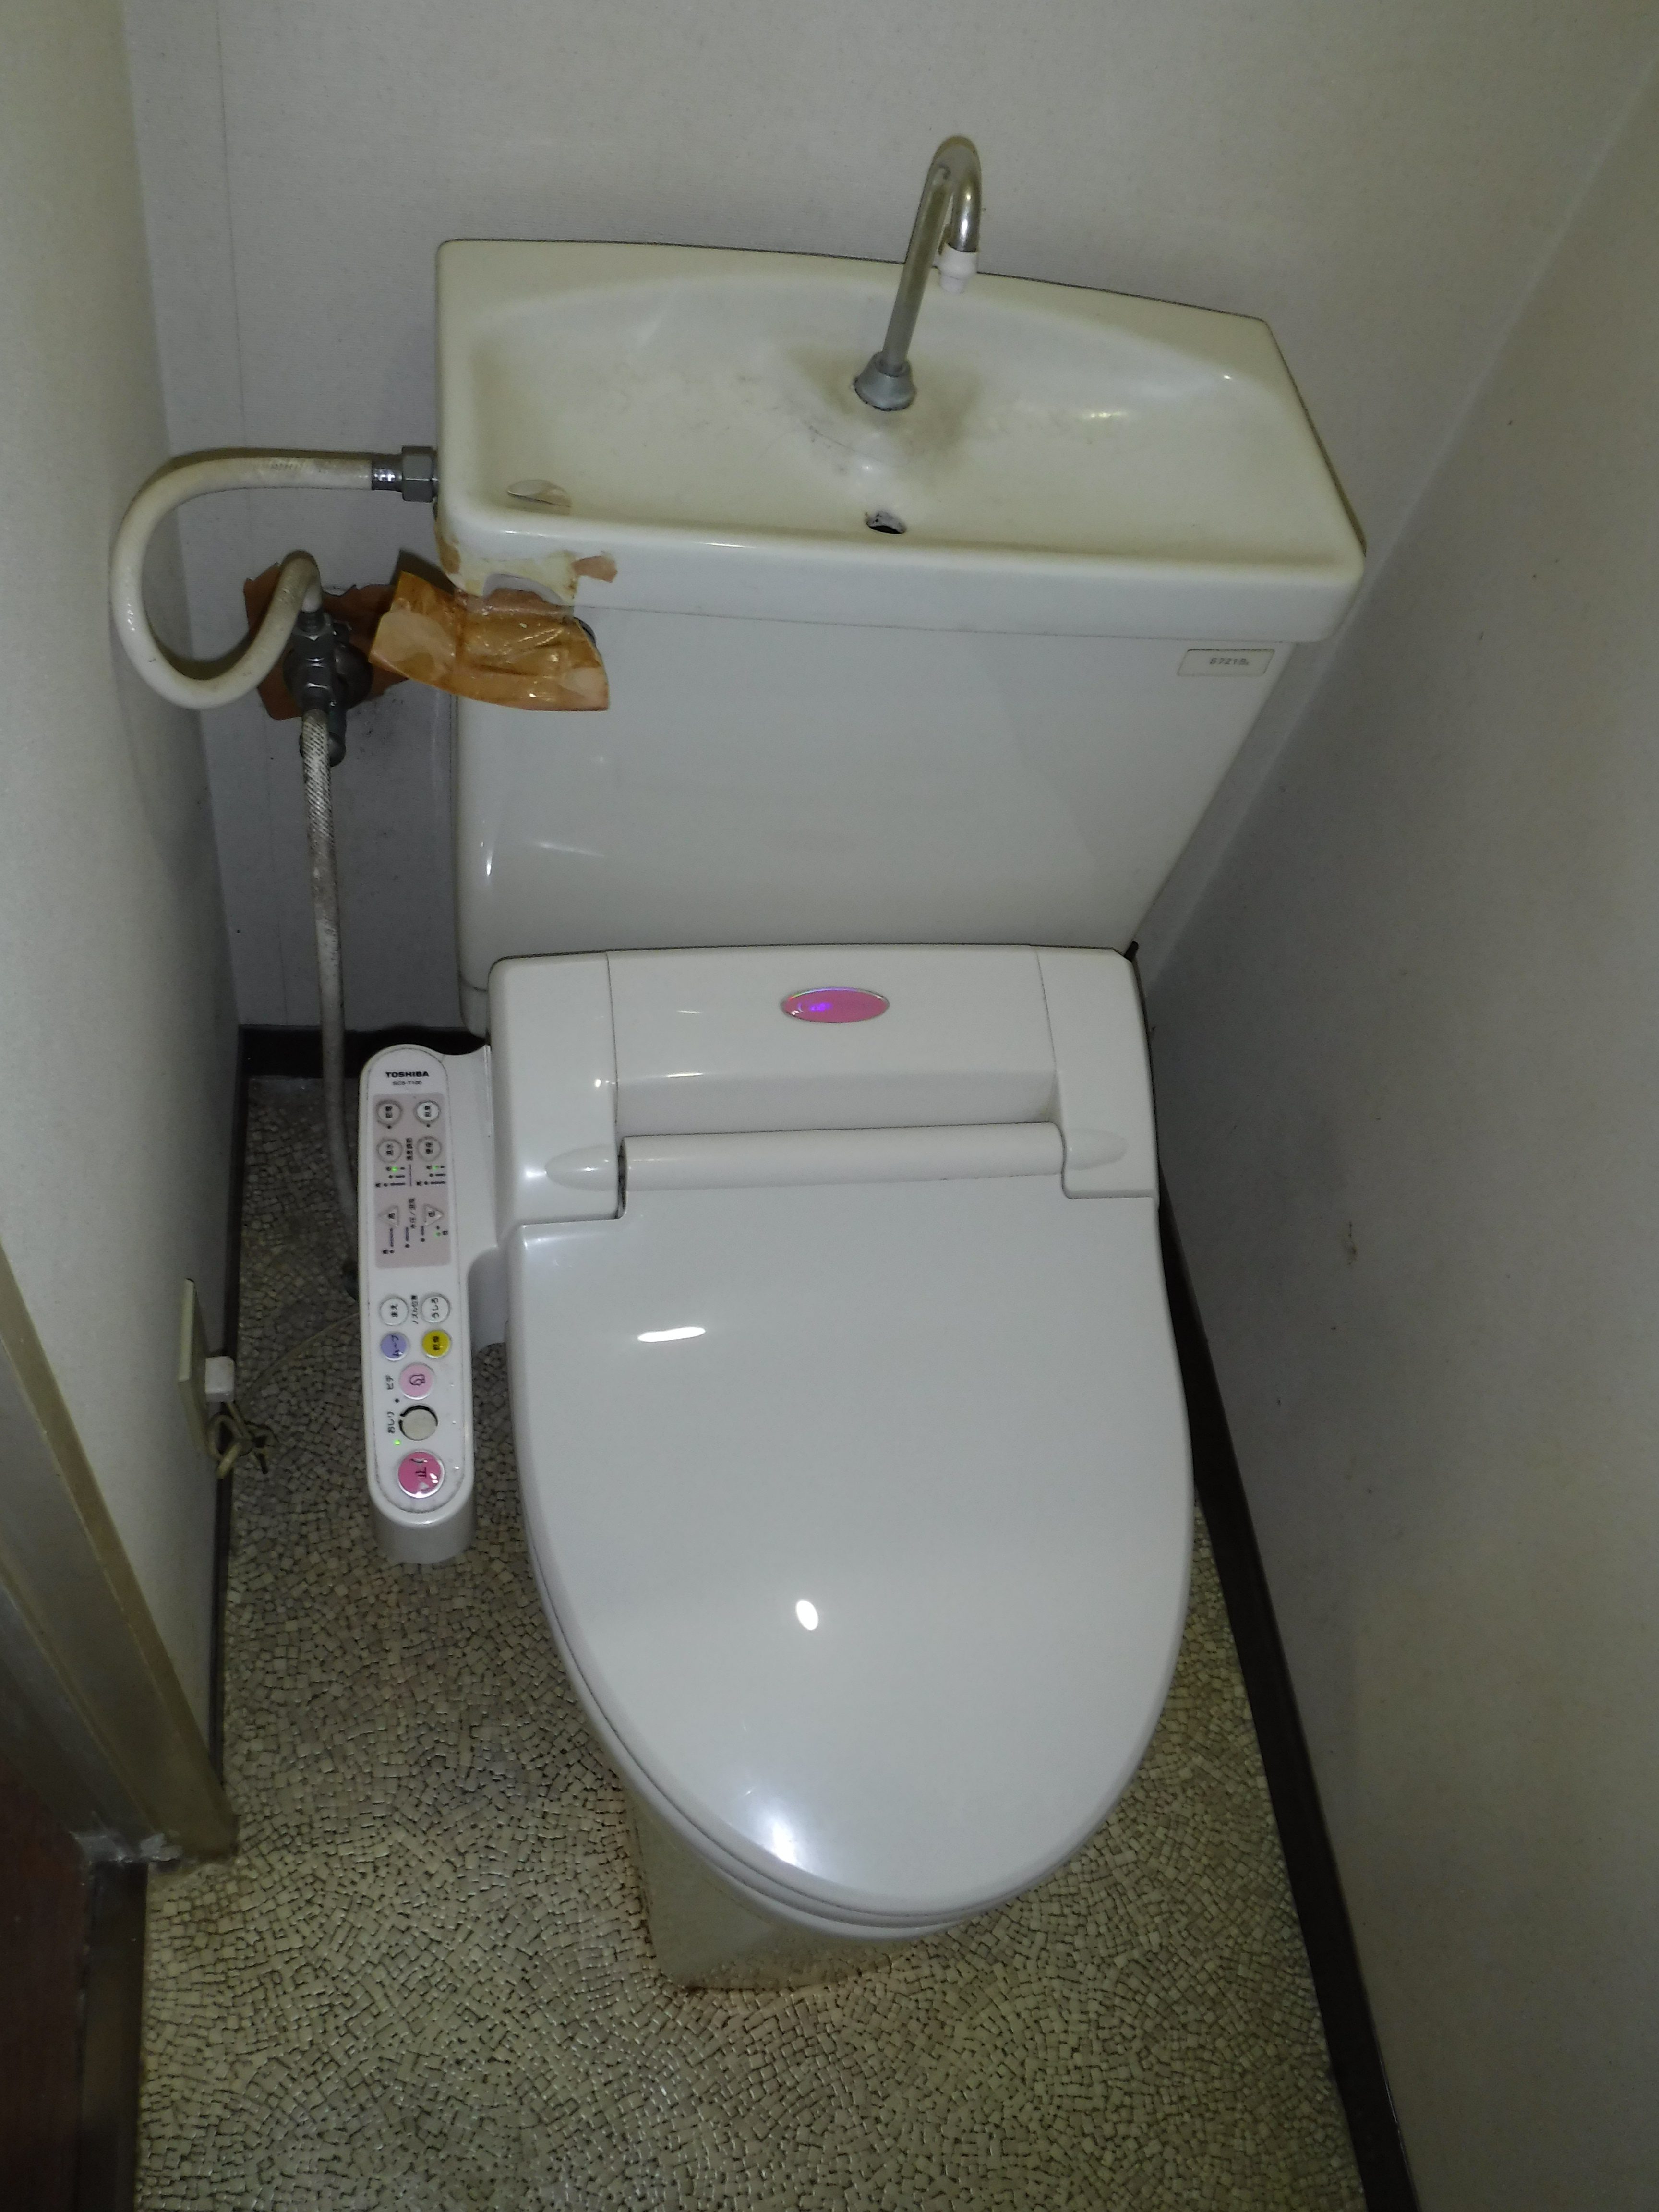 【トイレ編】トイレに流してはいけない物 ㈲ハヤシホーム機器 江戸川区小岩の水まわり修理・リフォーム